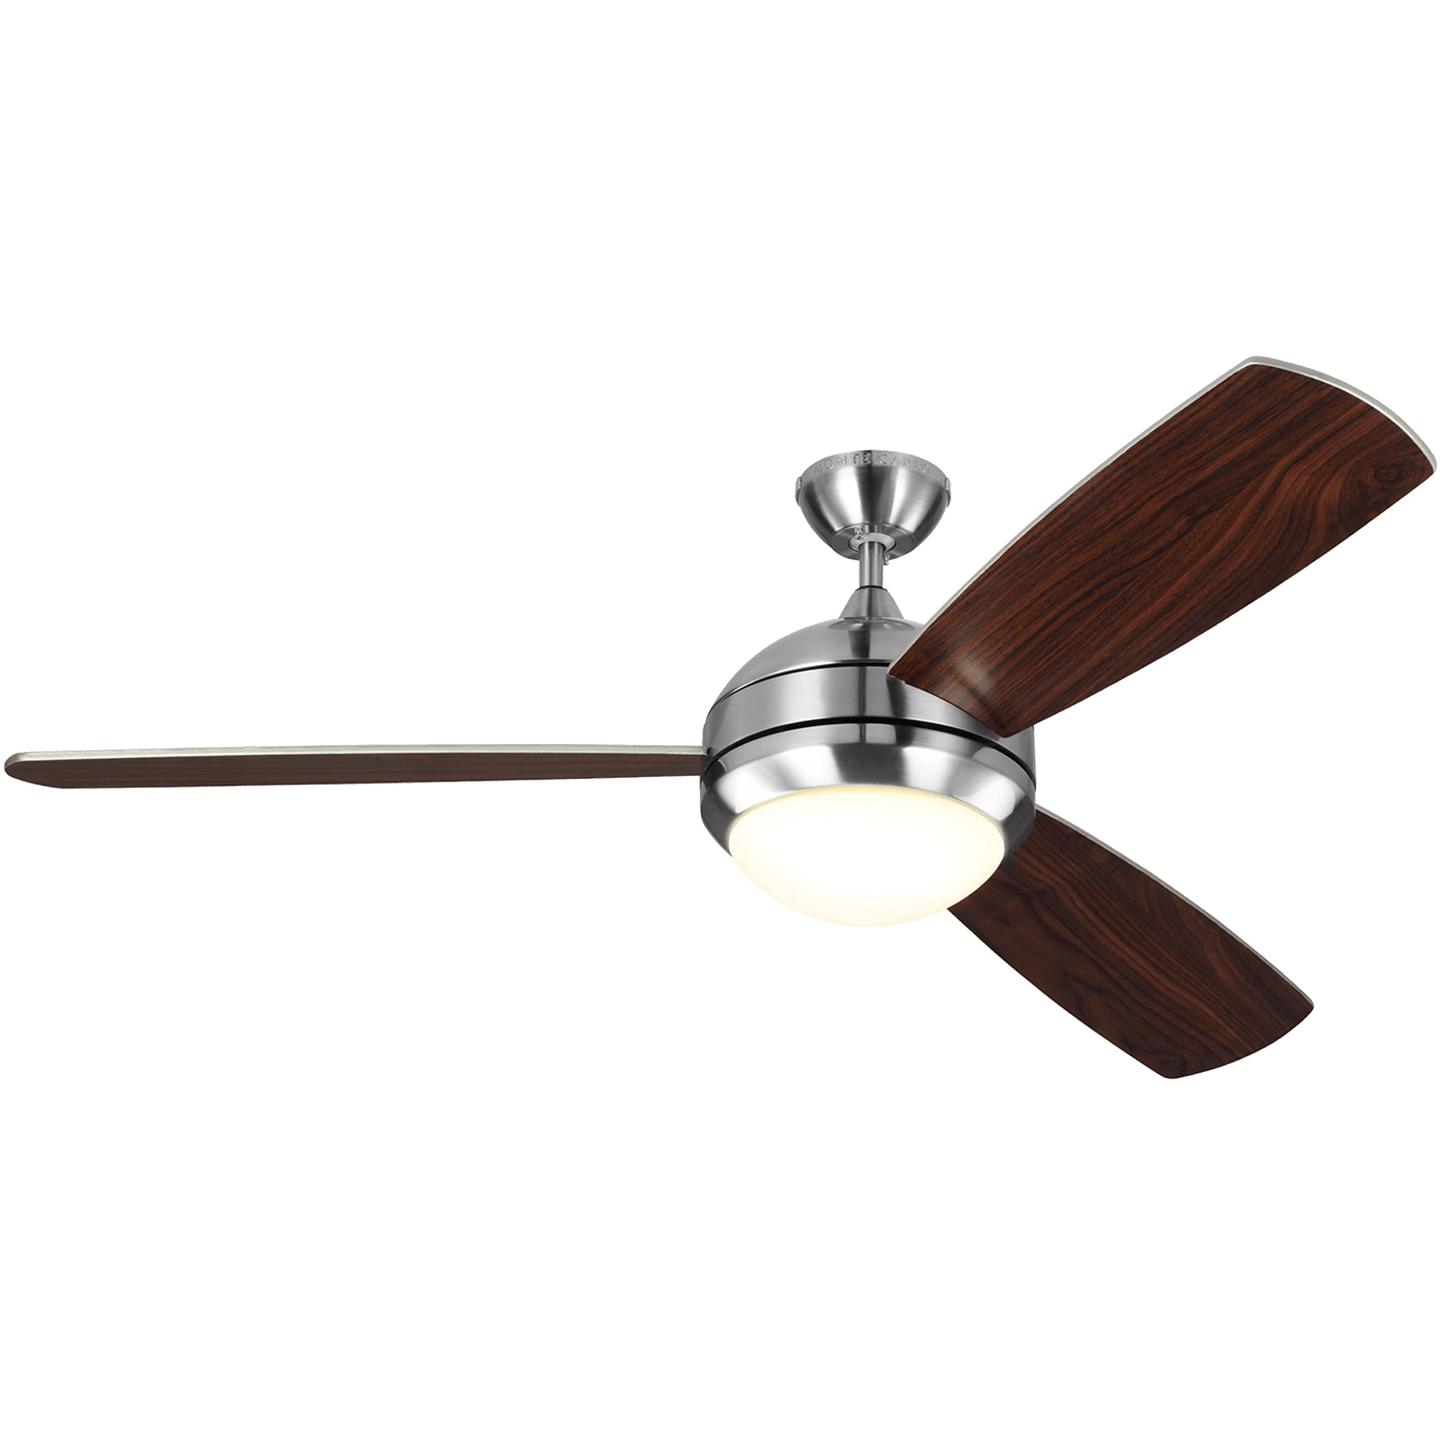 Купить Потолочный вентилятор Discus Trio 58" LED Ceiling Fan в интернет-магазине roooms.ru